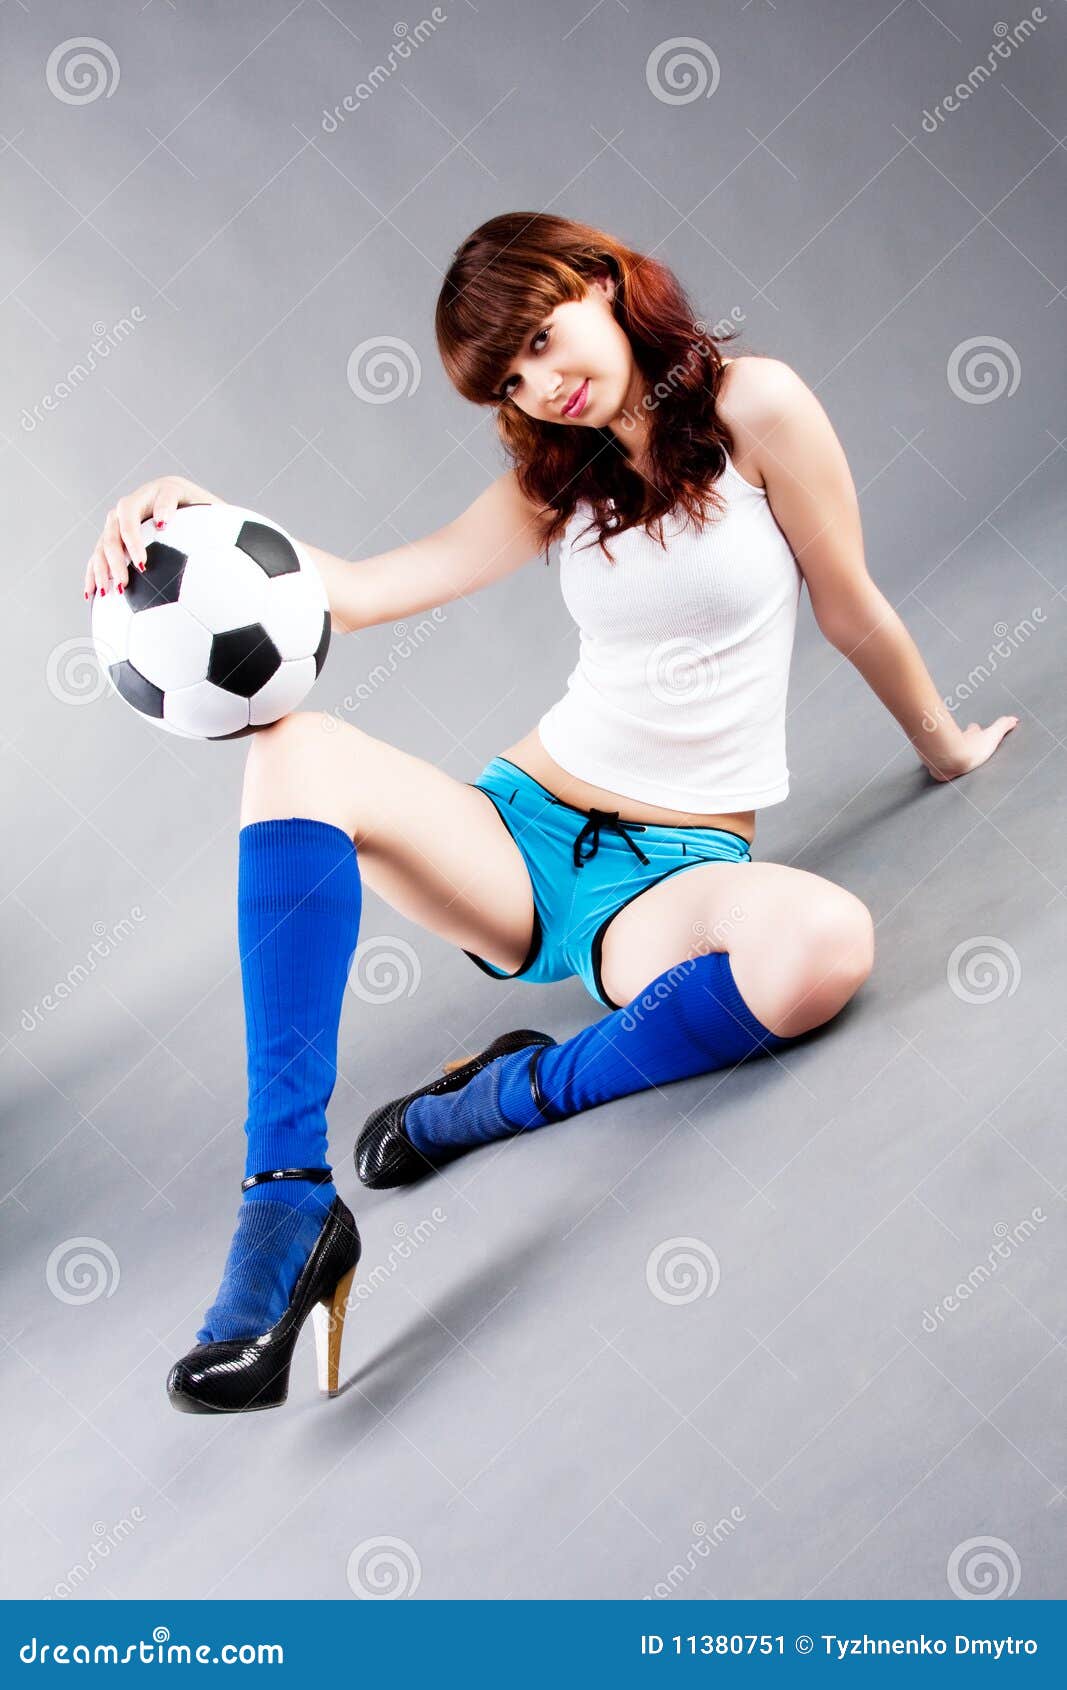 Slideshow dildo on soccer ball.